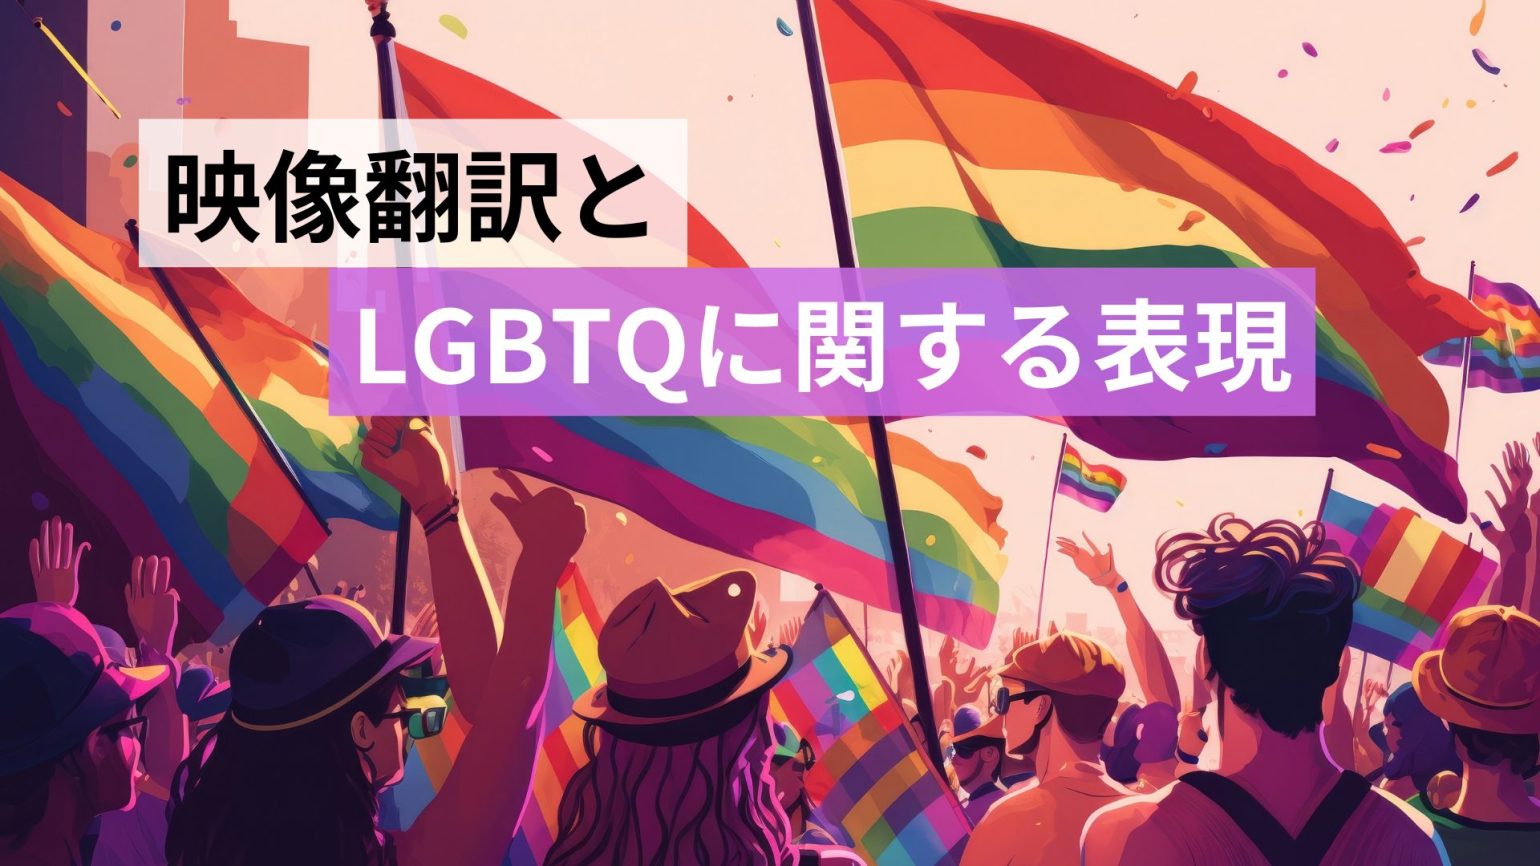 映像翻訳と LGBTQに関する表現